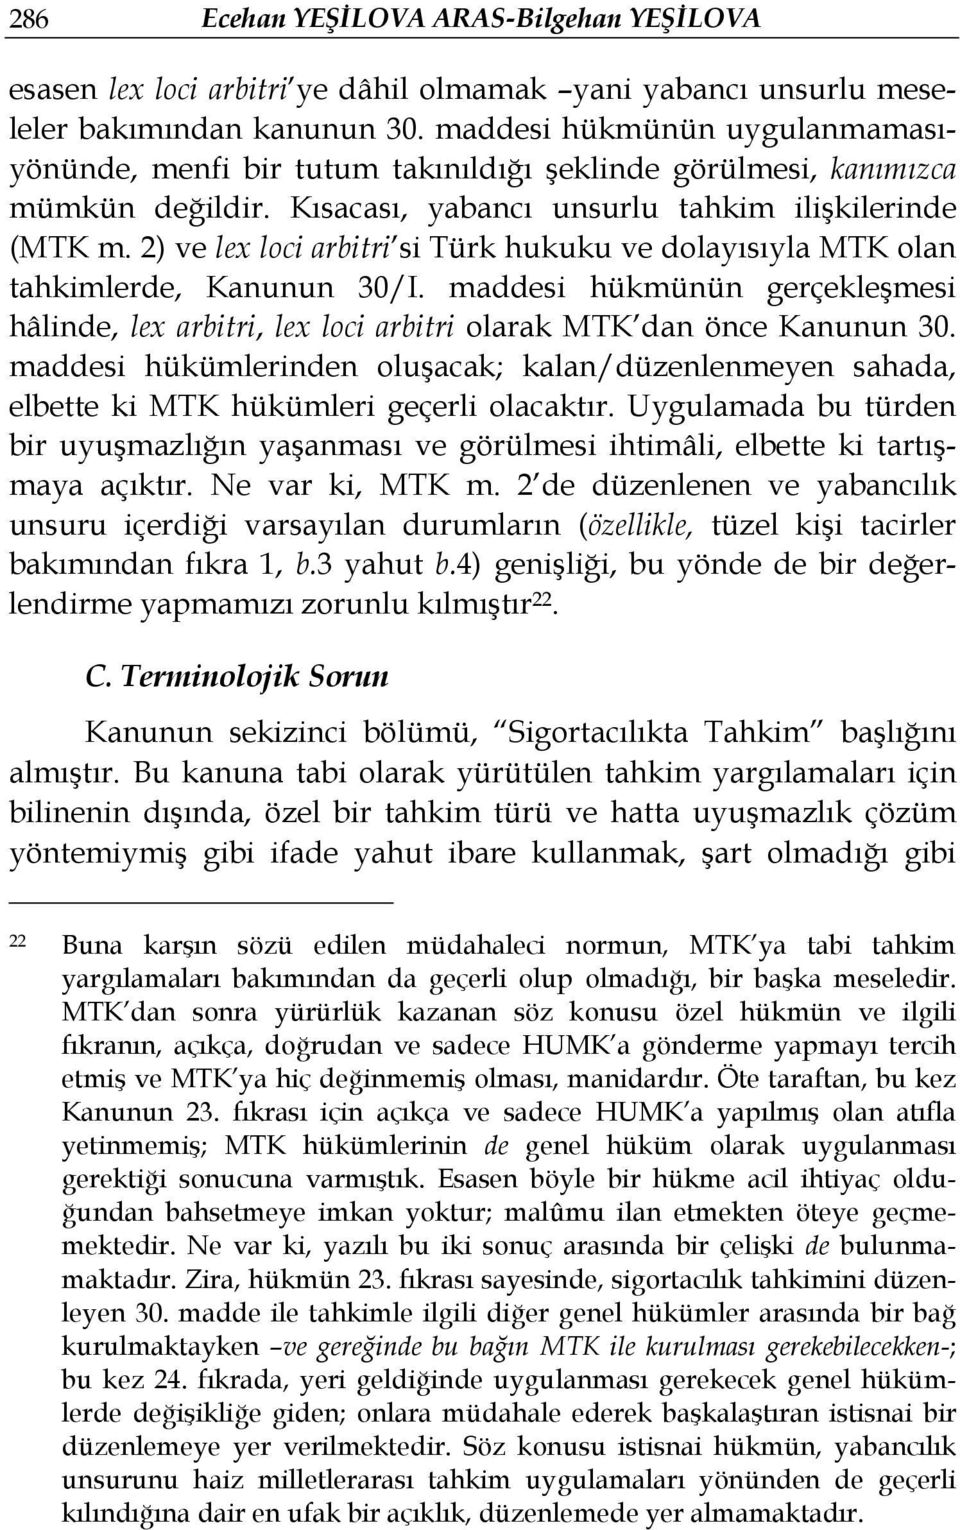 2) ve lex loci arbitri si Türk hukuku ve dolayısıyla MTK olan tahkimlerde, Kanunun 30/I. maddesi hükmünün gerçekleşmesi hâlinde, lex arbitri, lex loci arbitri olarak MTK dan önce Kanunun 30.